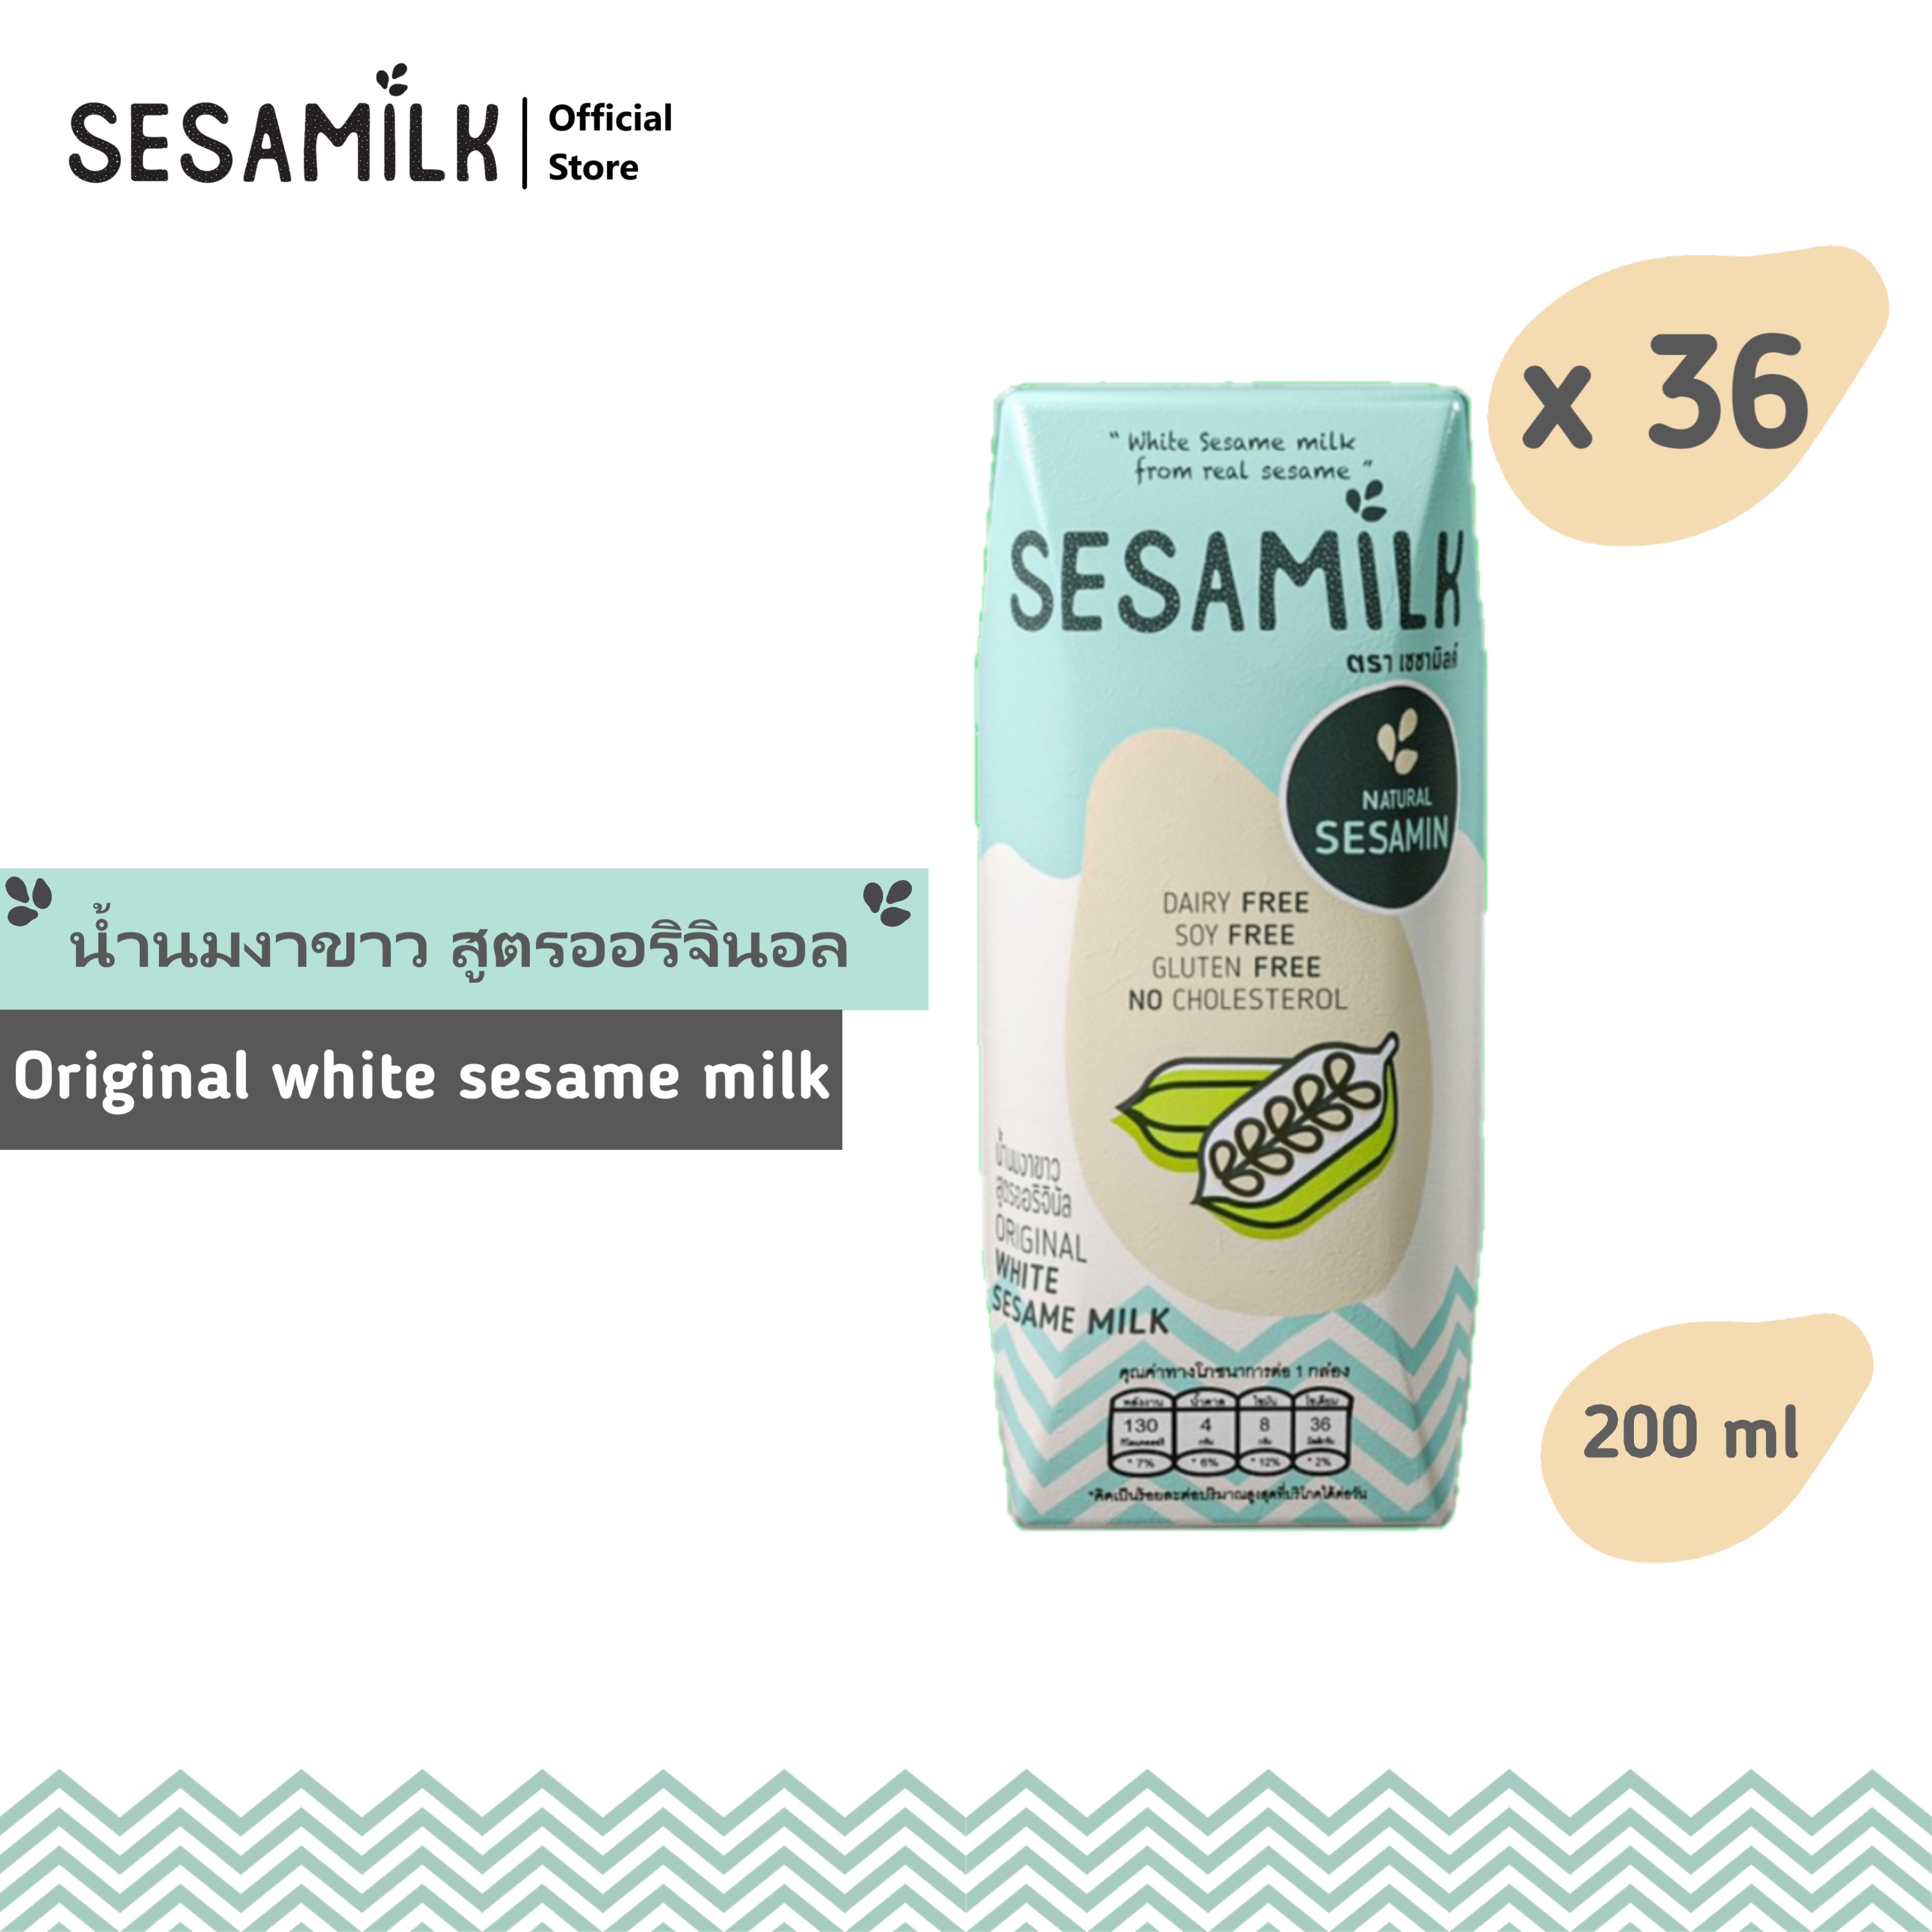 เซซามิลค์ น้ำนมงาขาว สูตรออรินัล 200ml x 36 กล่อง Sesamilk Original White sesame milk 200ml x 36 boxes